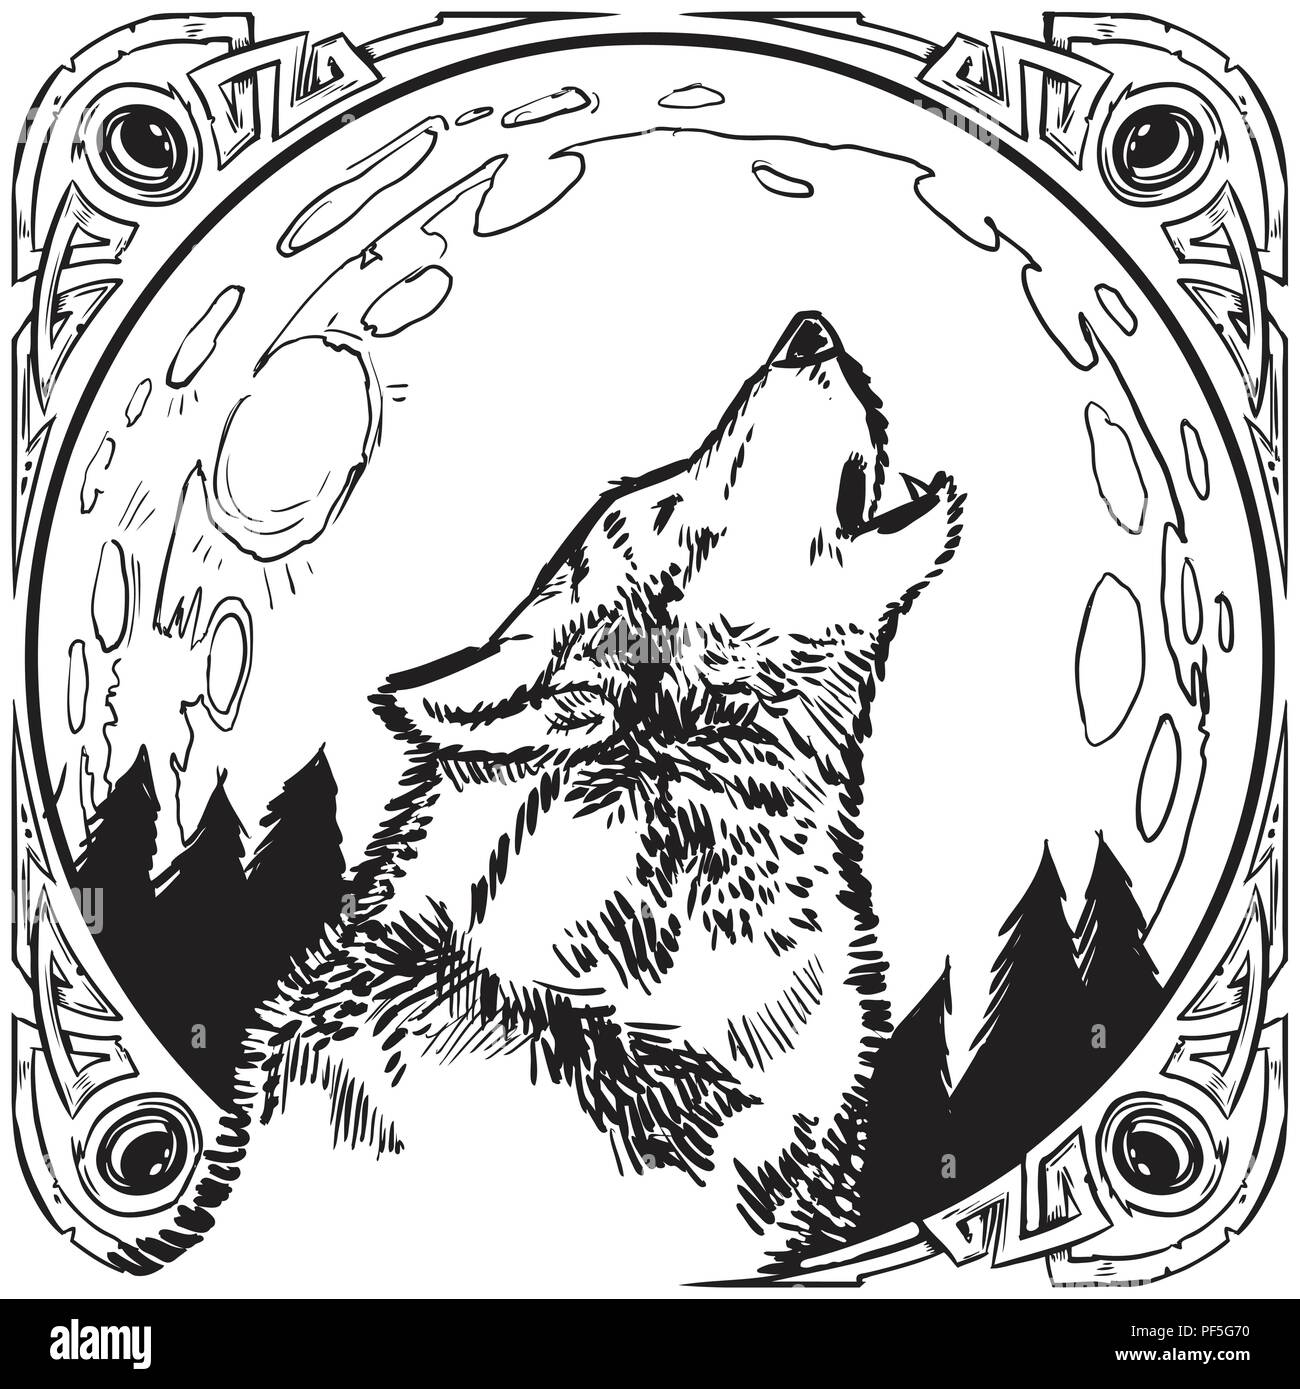 Vector cartoon clip art illustration d'un loup hurlant devant une pleine  lune de nuit avec un arbres contenus dans un cadre ou incrustée de bord  Image Vectorielle Stock - Alamy